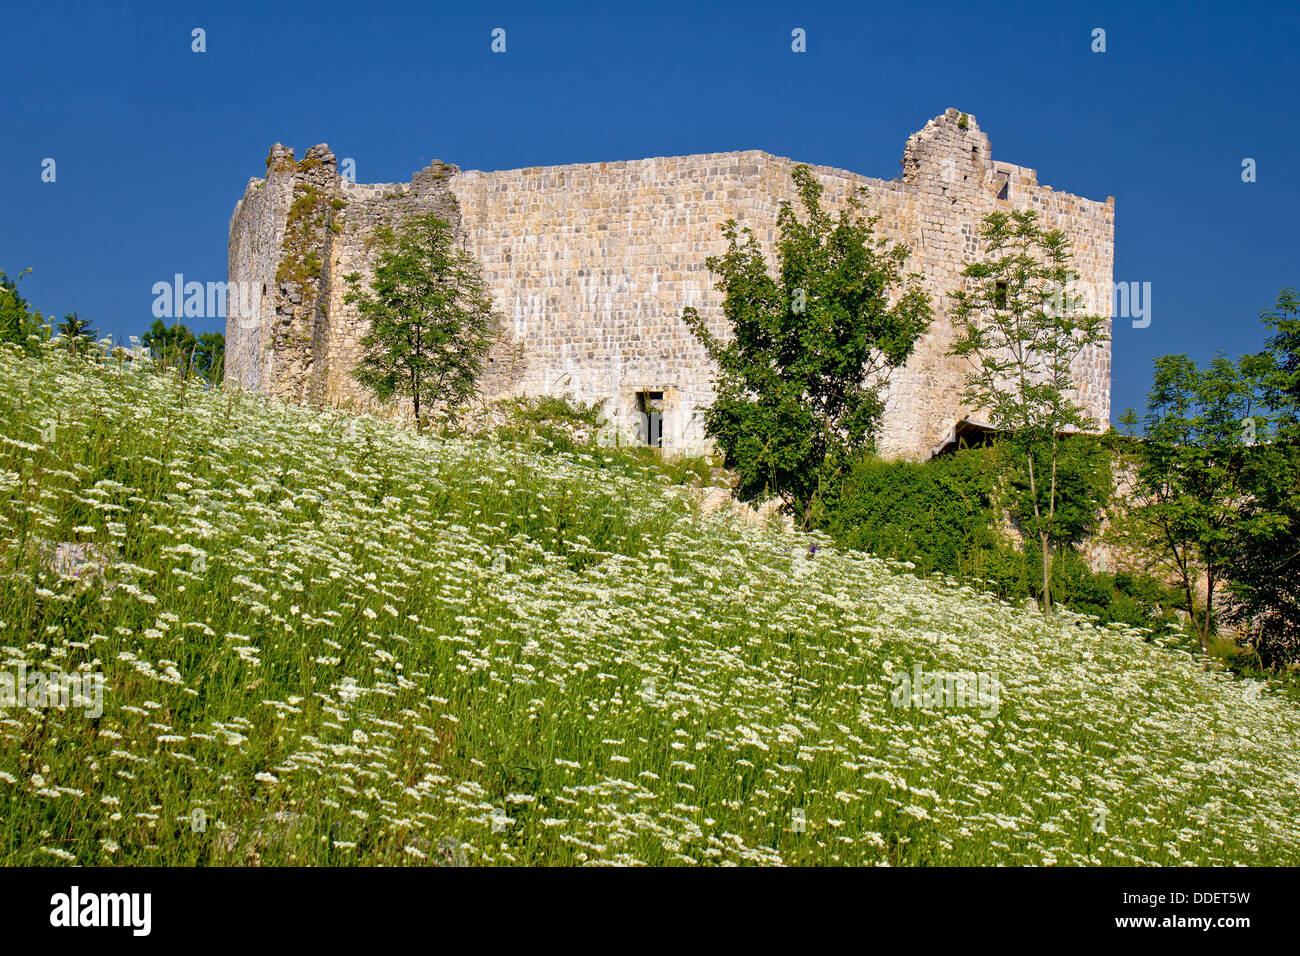 Slunj old fortress ruin in green nature, Croatia Stock Photo